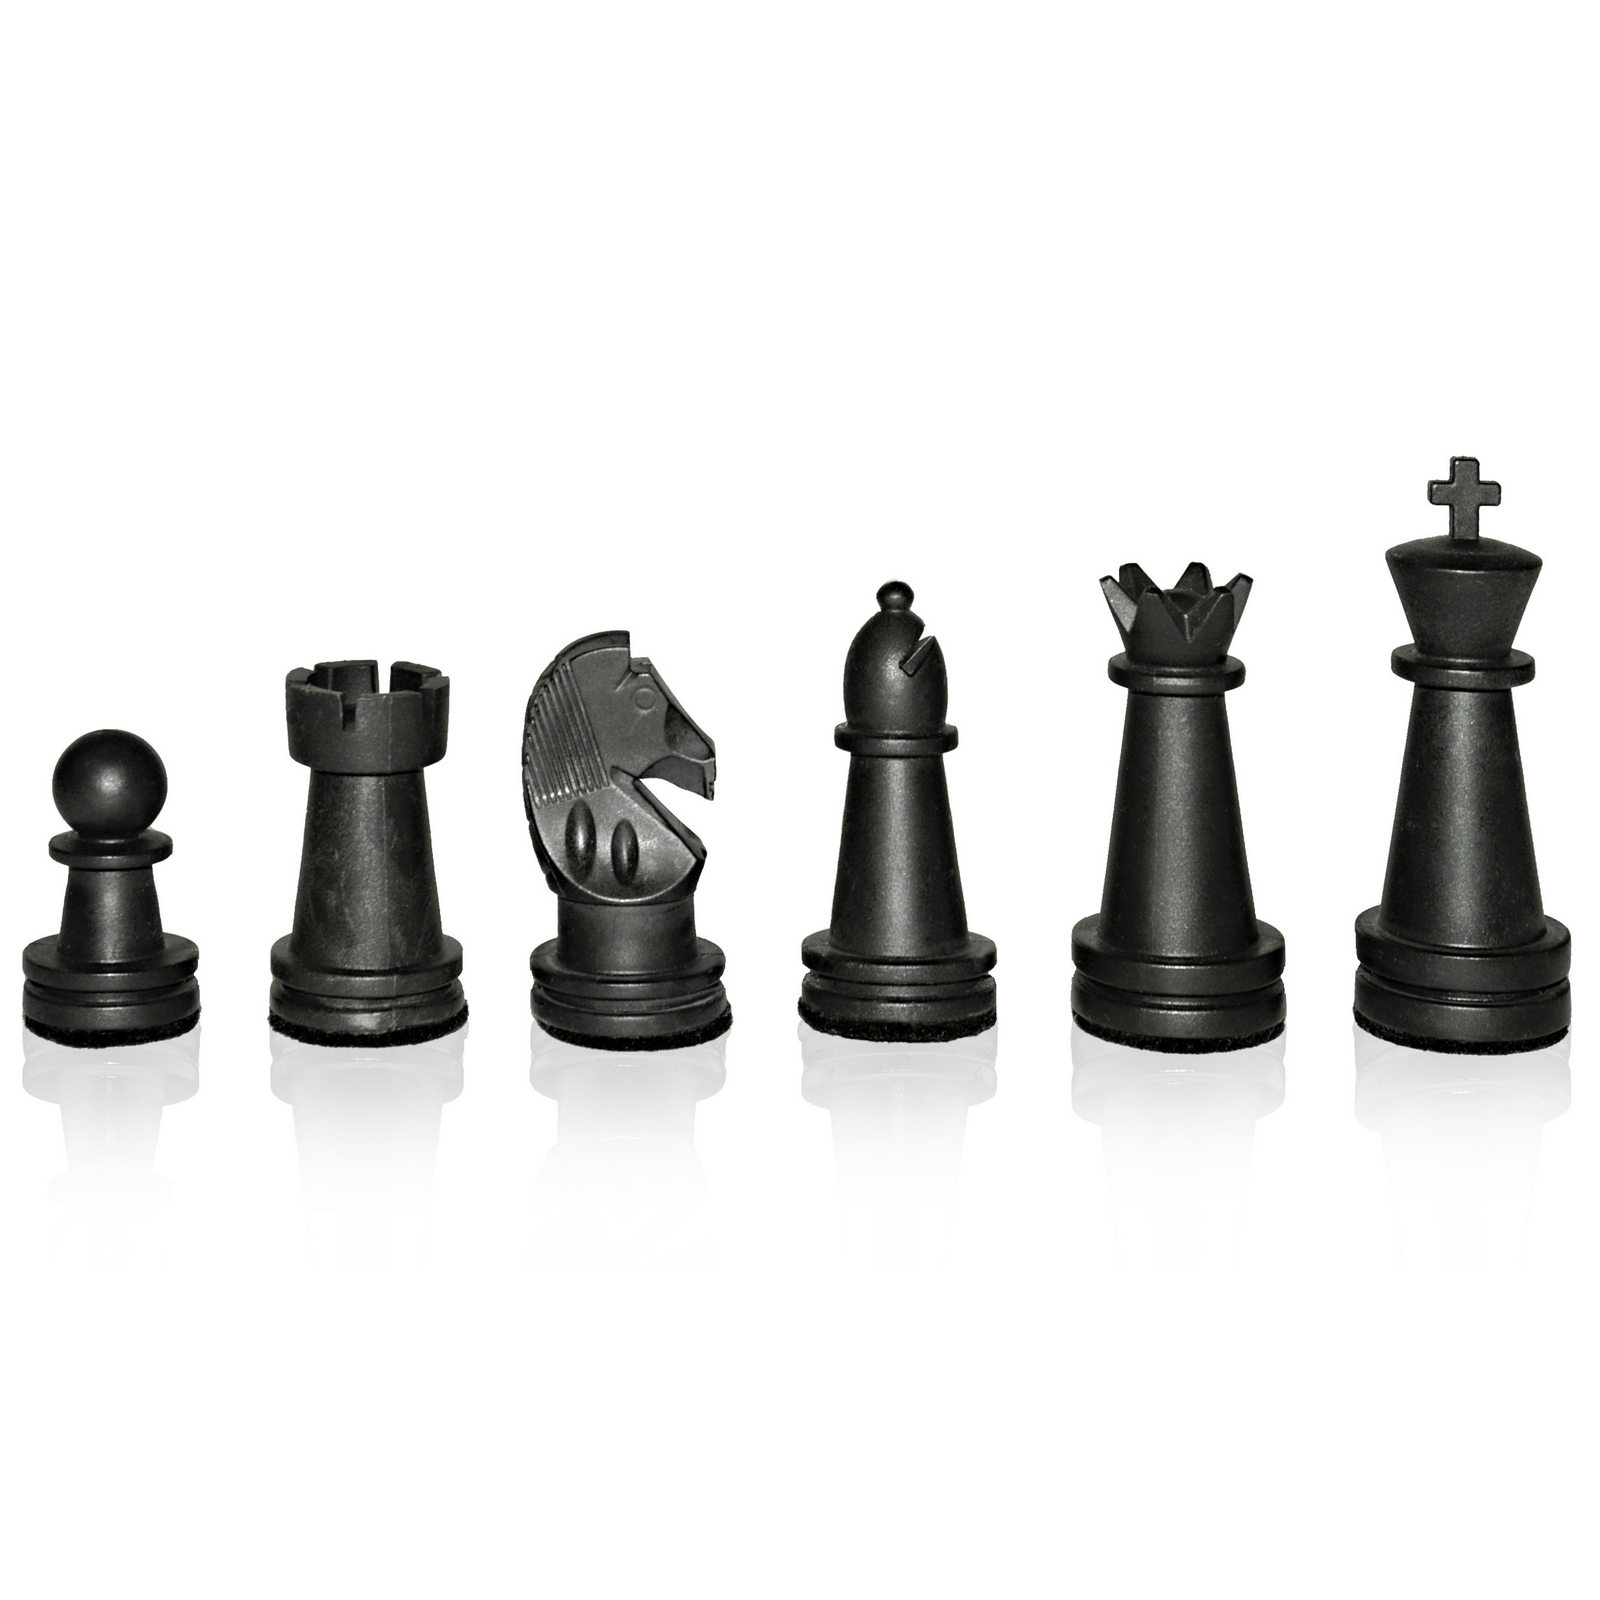 SUPERB World Championship Chess Set - ChessBaron Chess Sets - 01278 426100